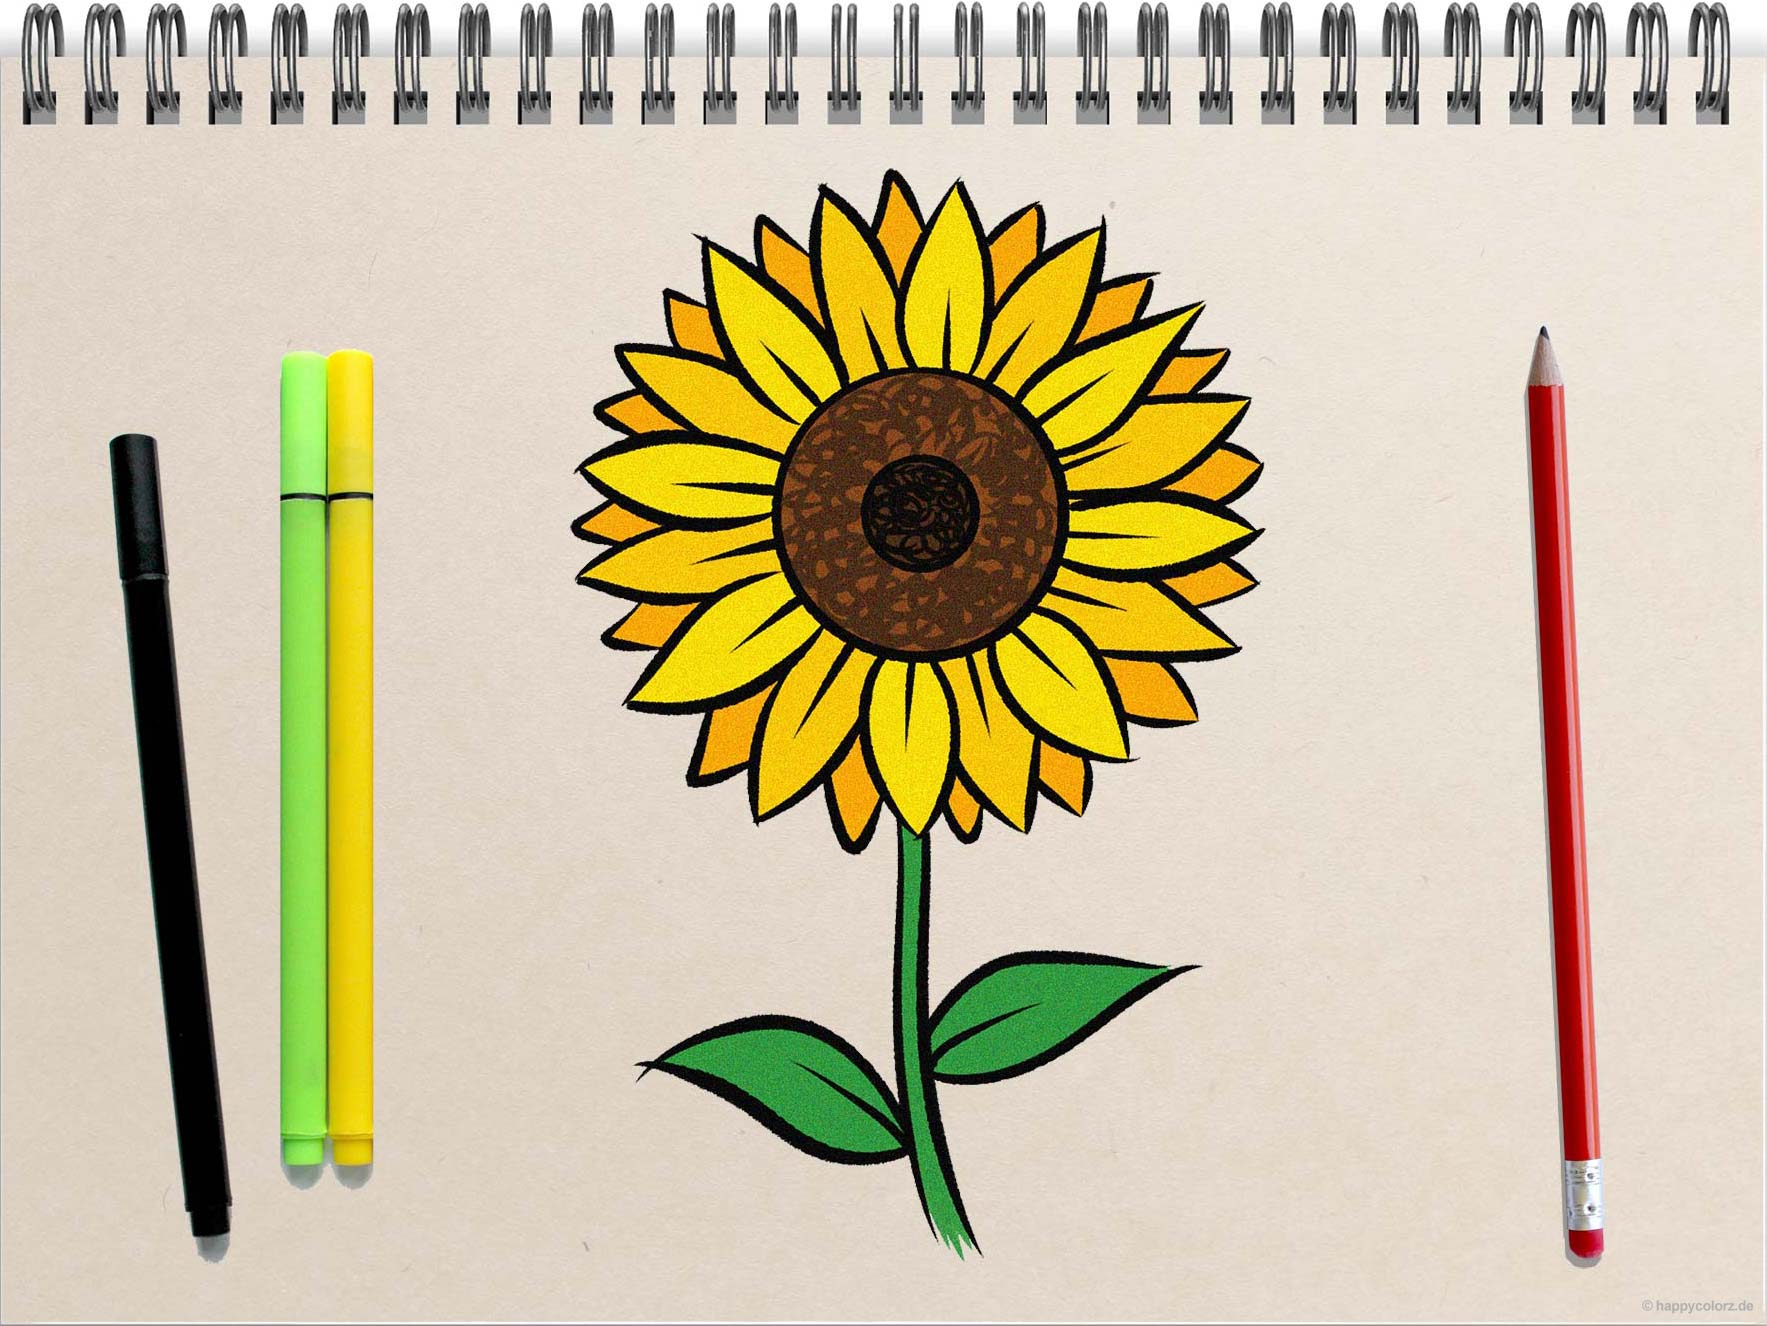 Sonnenblume malen - Schritt-für-Schritt Anleitung mit Vorlagen